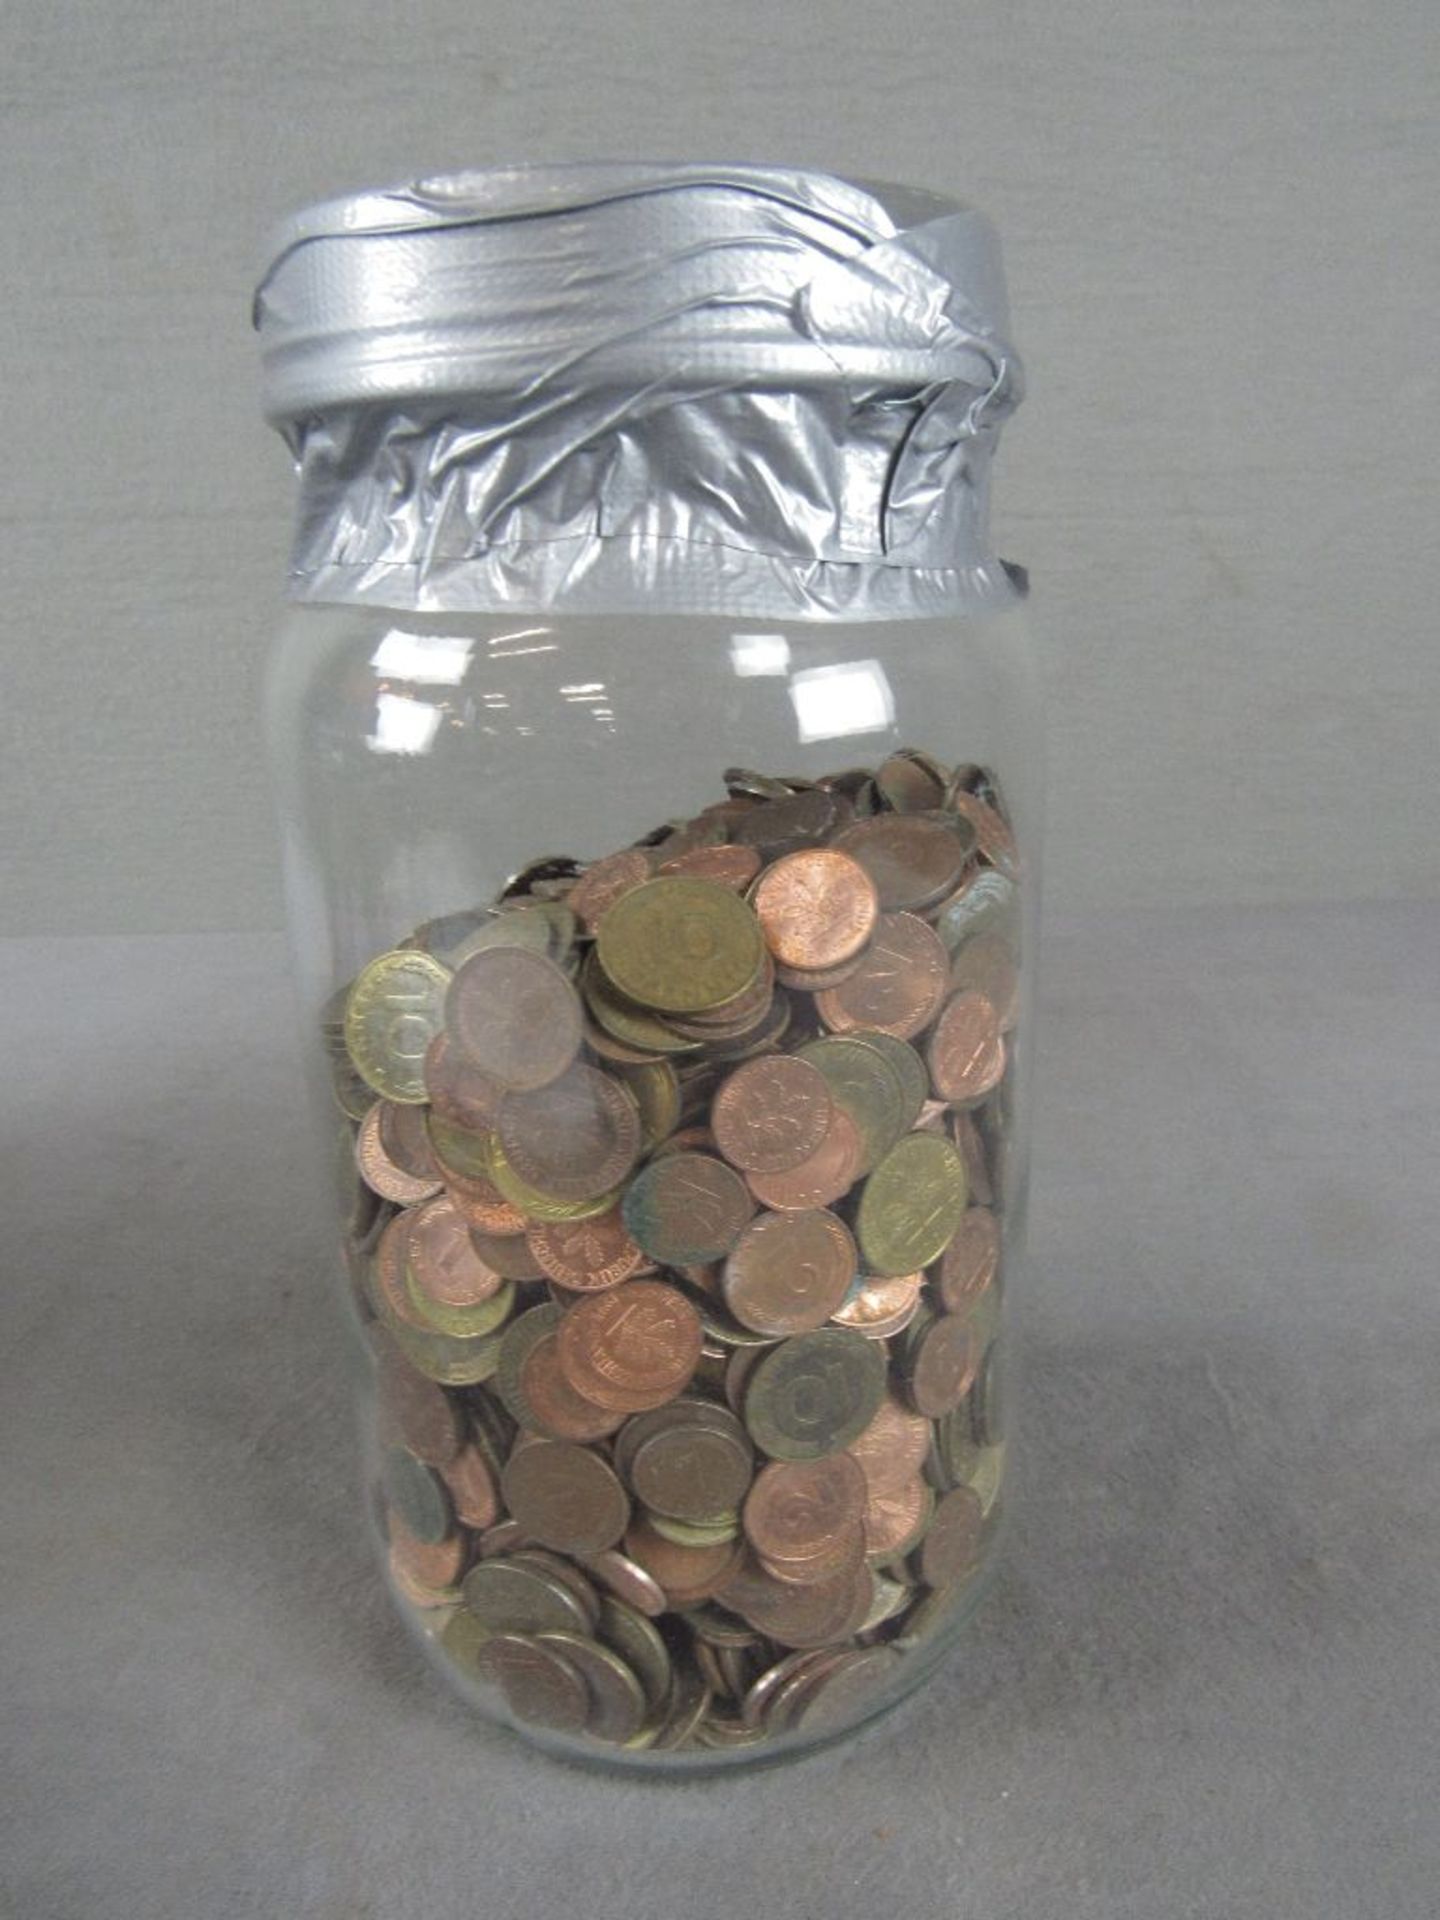 Prall gefülltes Glas mit Münzen